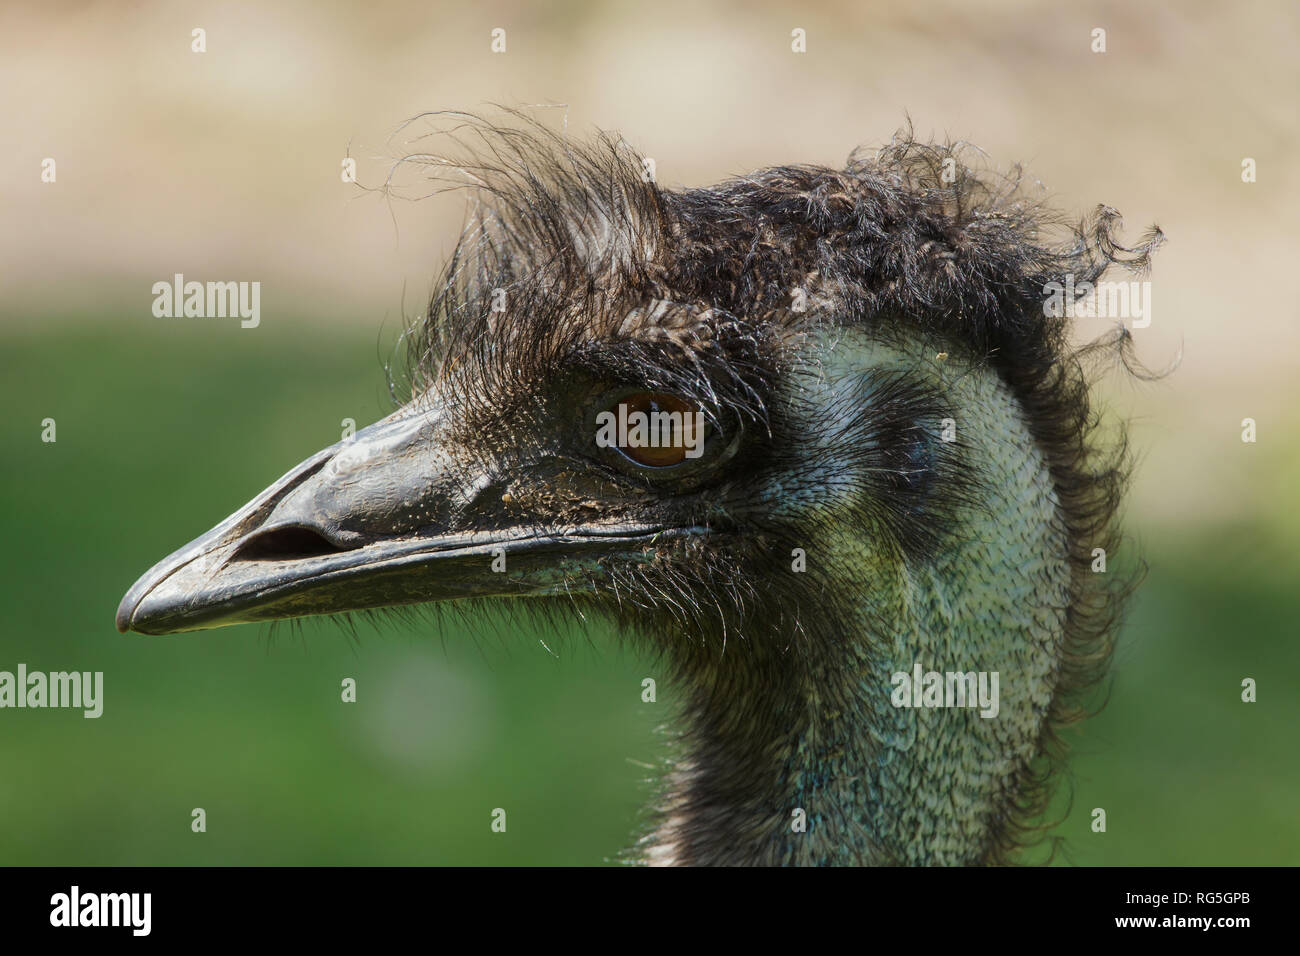 Emu (Dromaius novaehollandiae). Wildlife bird. Stock Photo